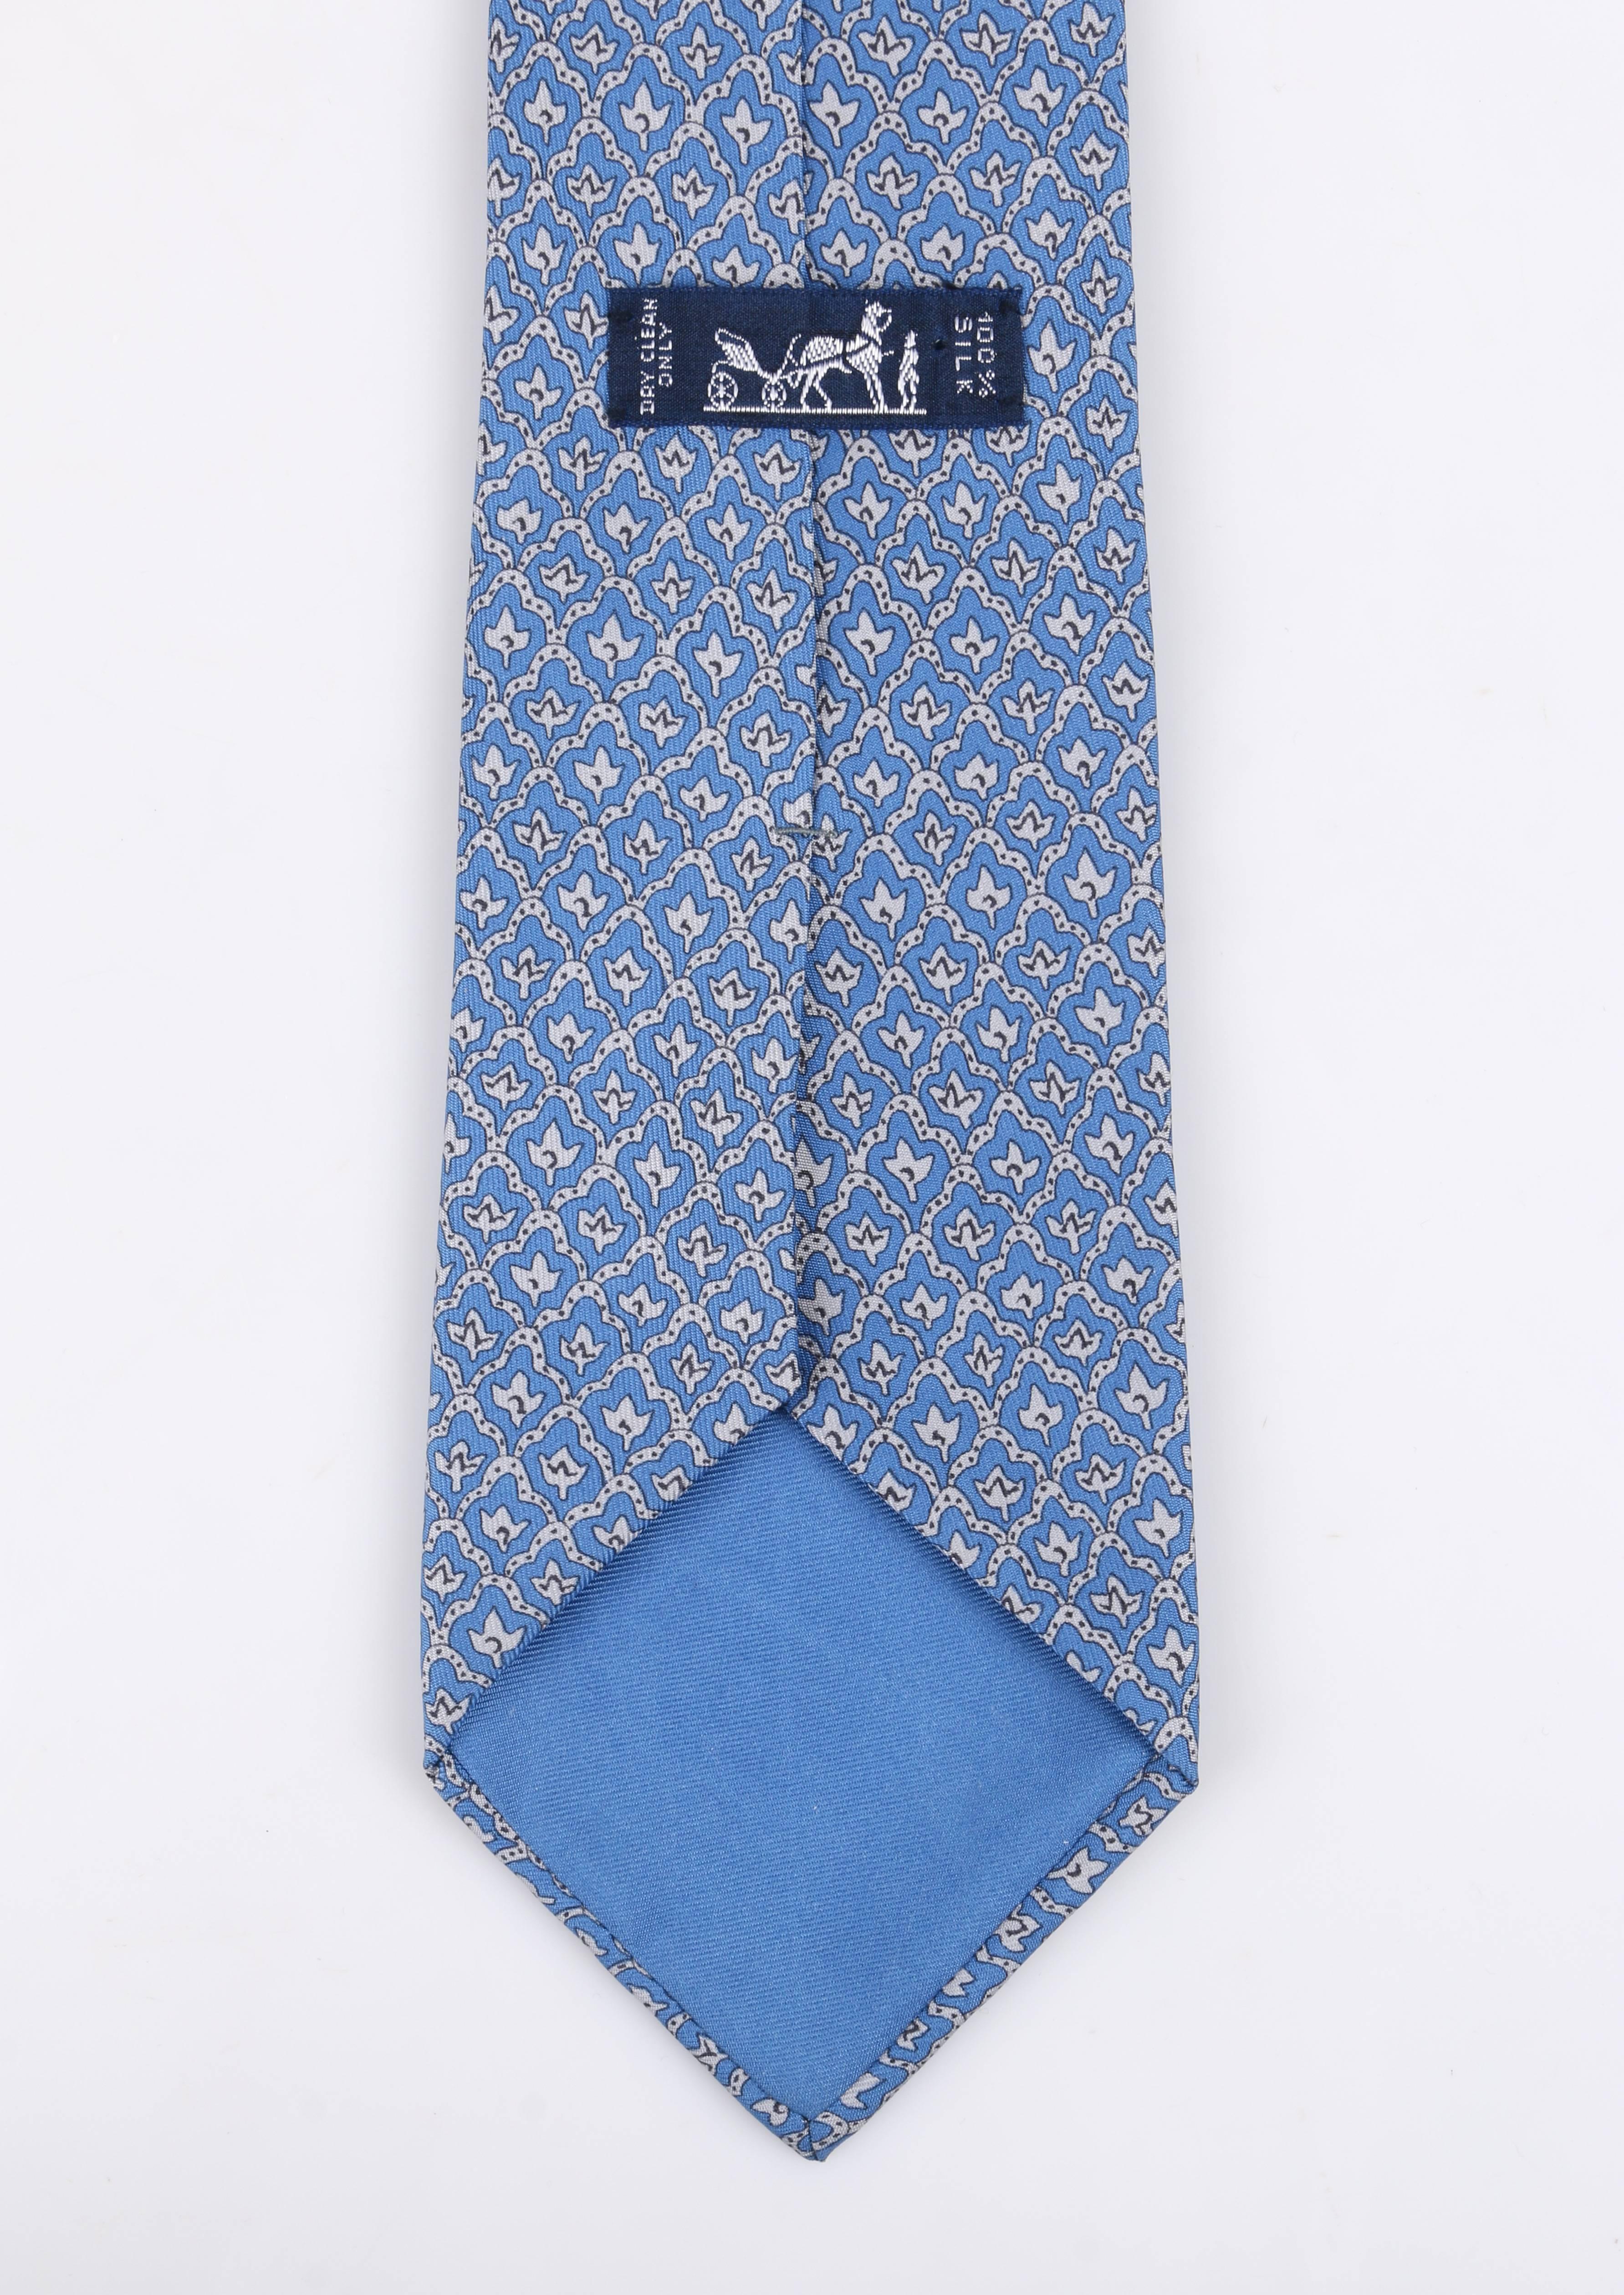 Men's HERMES 5 Fold Cornflower Blue White Diamond Leaf Print Silk Necktie Tie